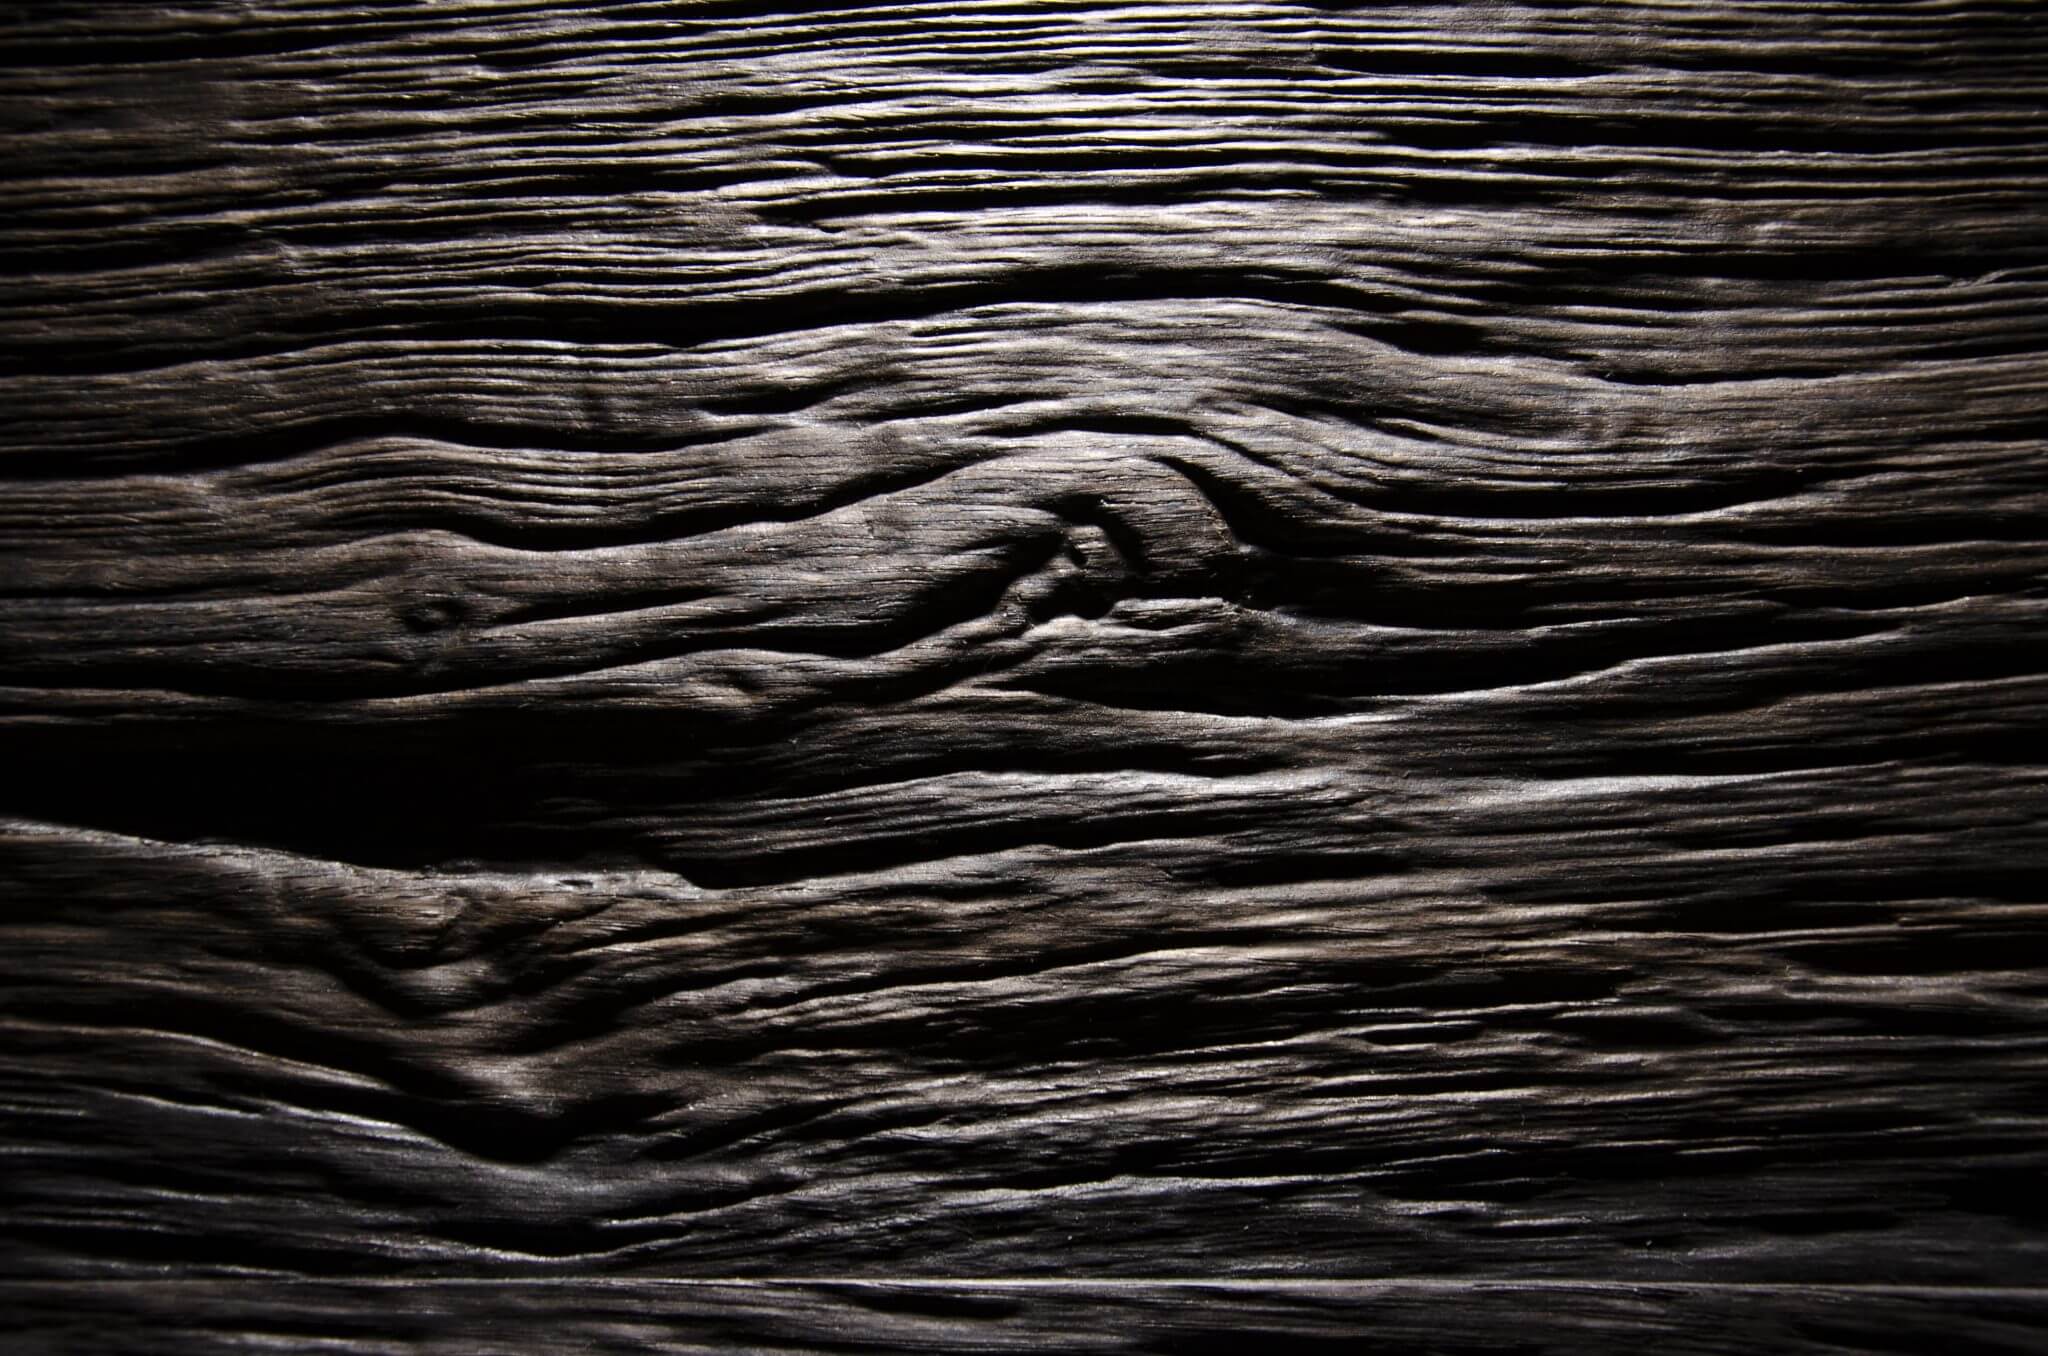 03 – Bog Oak - Real wood veneer